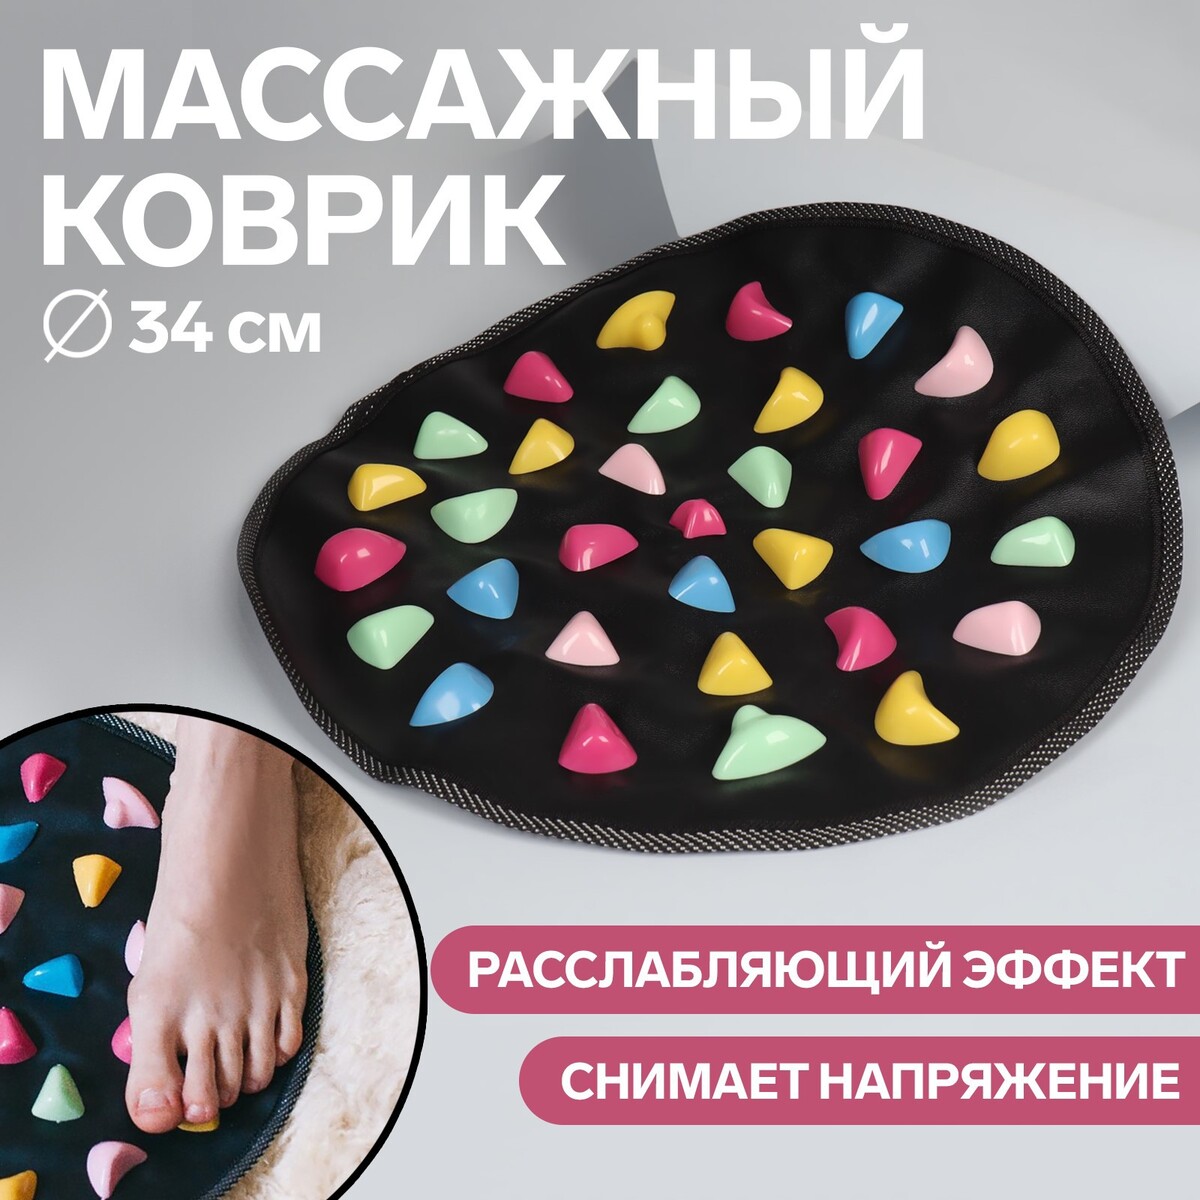 Массажный коврик, d = 34 см, цвет черный/разноцветный массажный коврик для ног